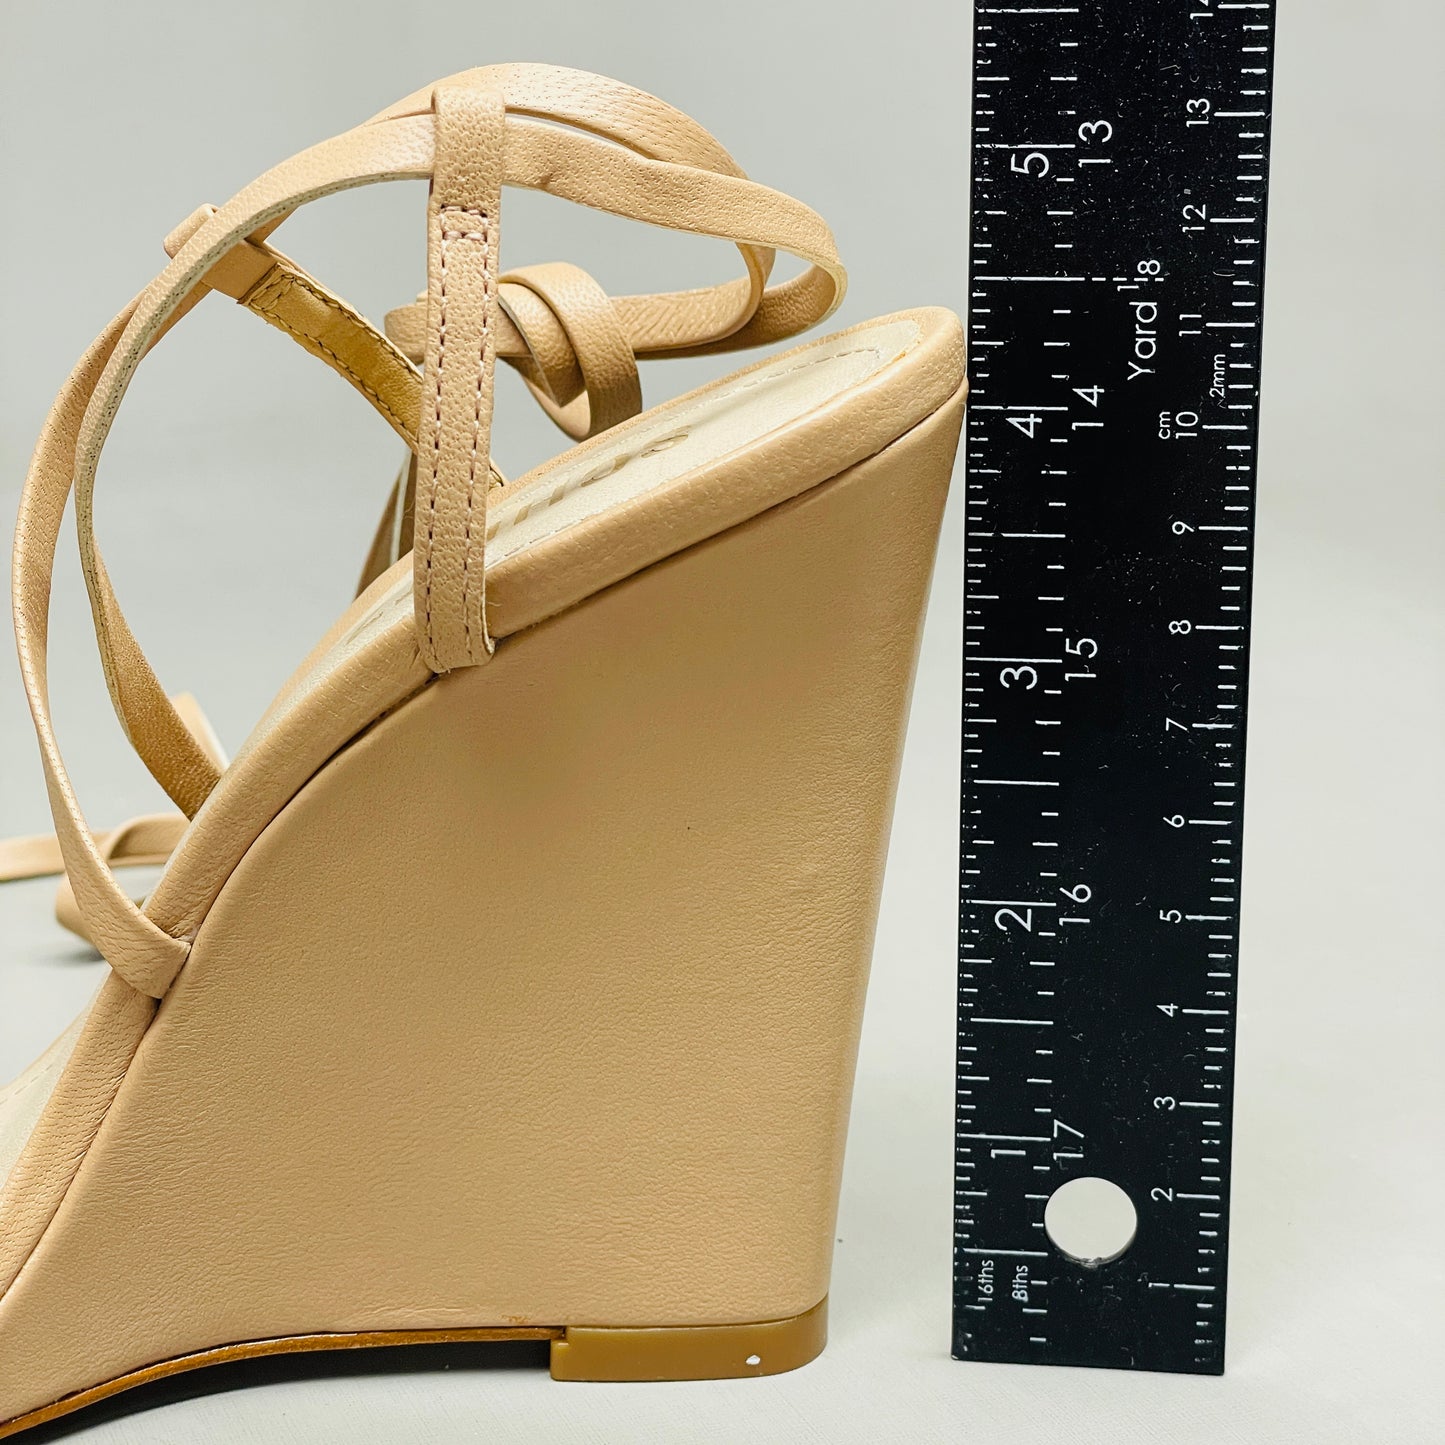 SCHUTZ Deonne Casual Deluxe Nappa Leather Sandal True Beige Sz 6.5 S013810172 (New)